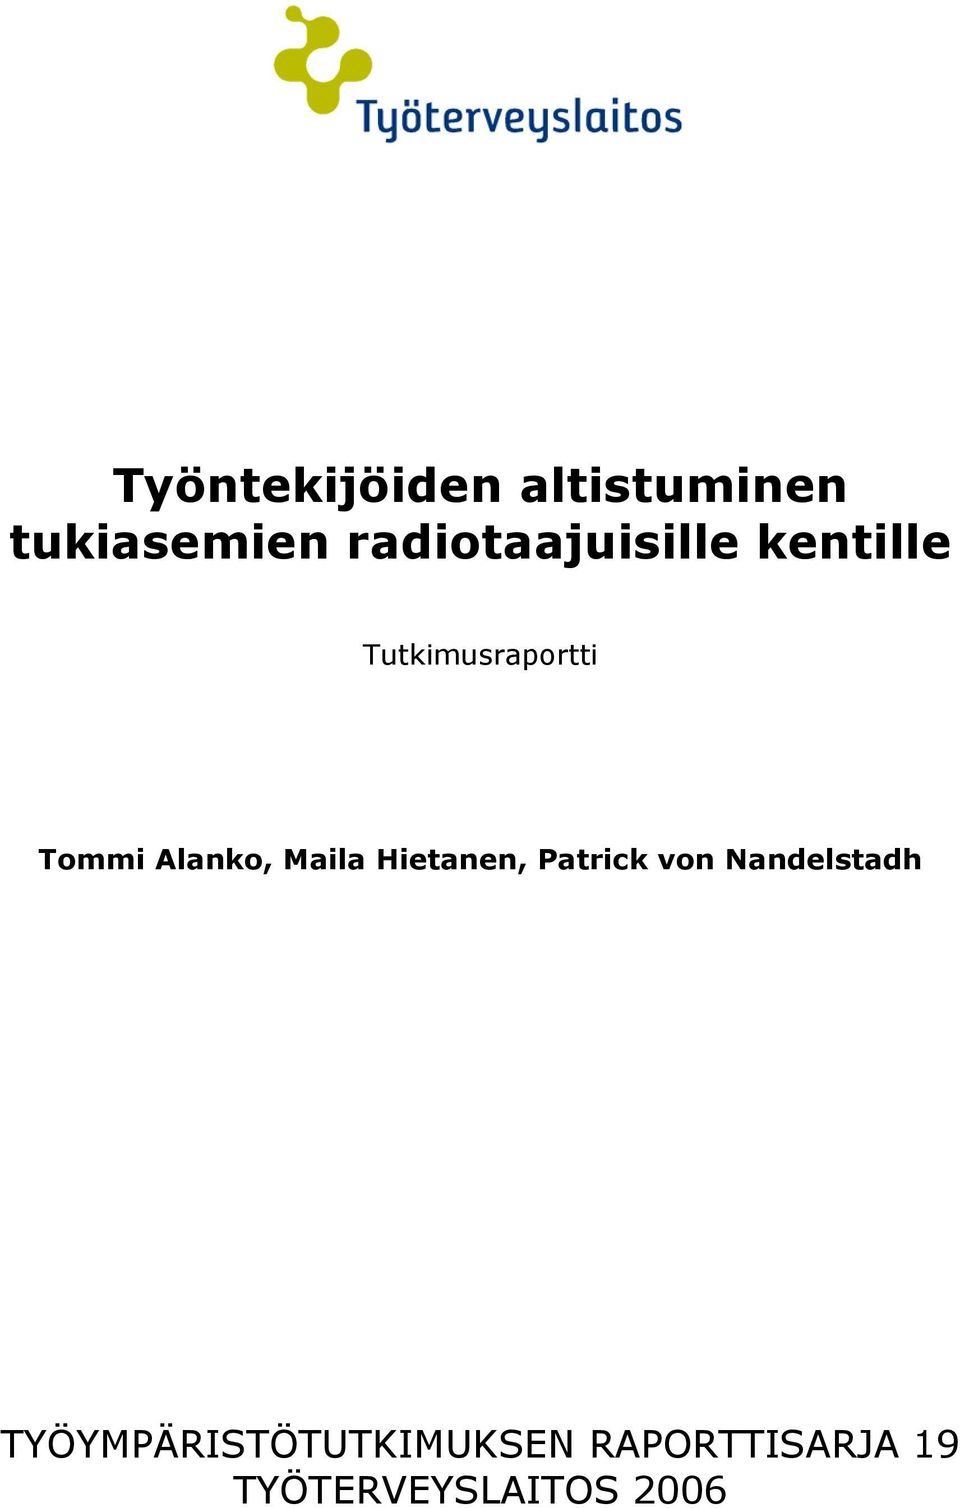 Alanko, Maila Hietanen, Patrick von Nandelstadh